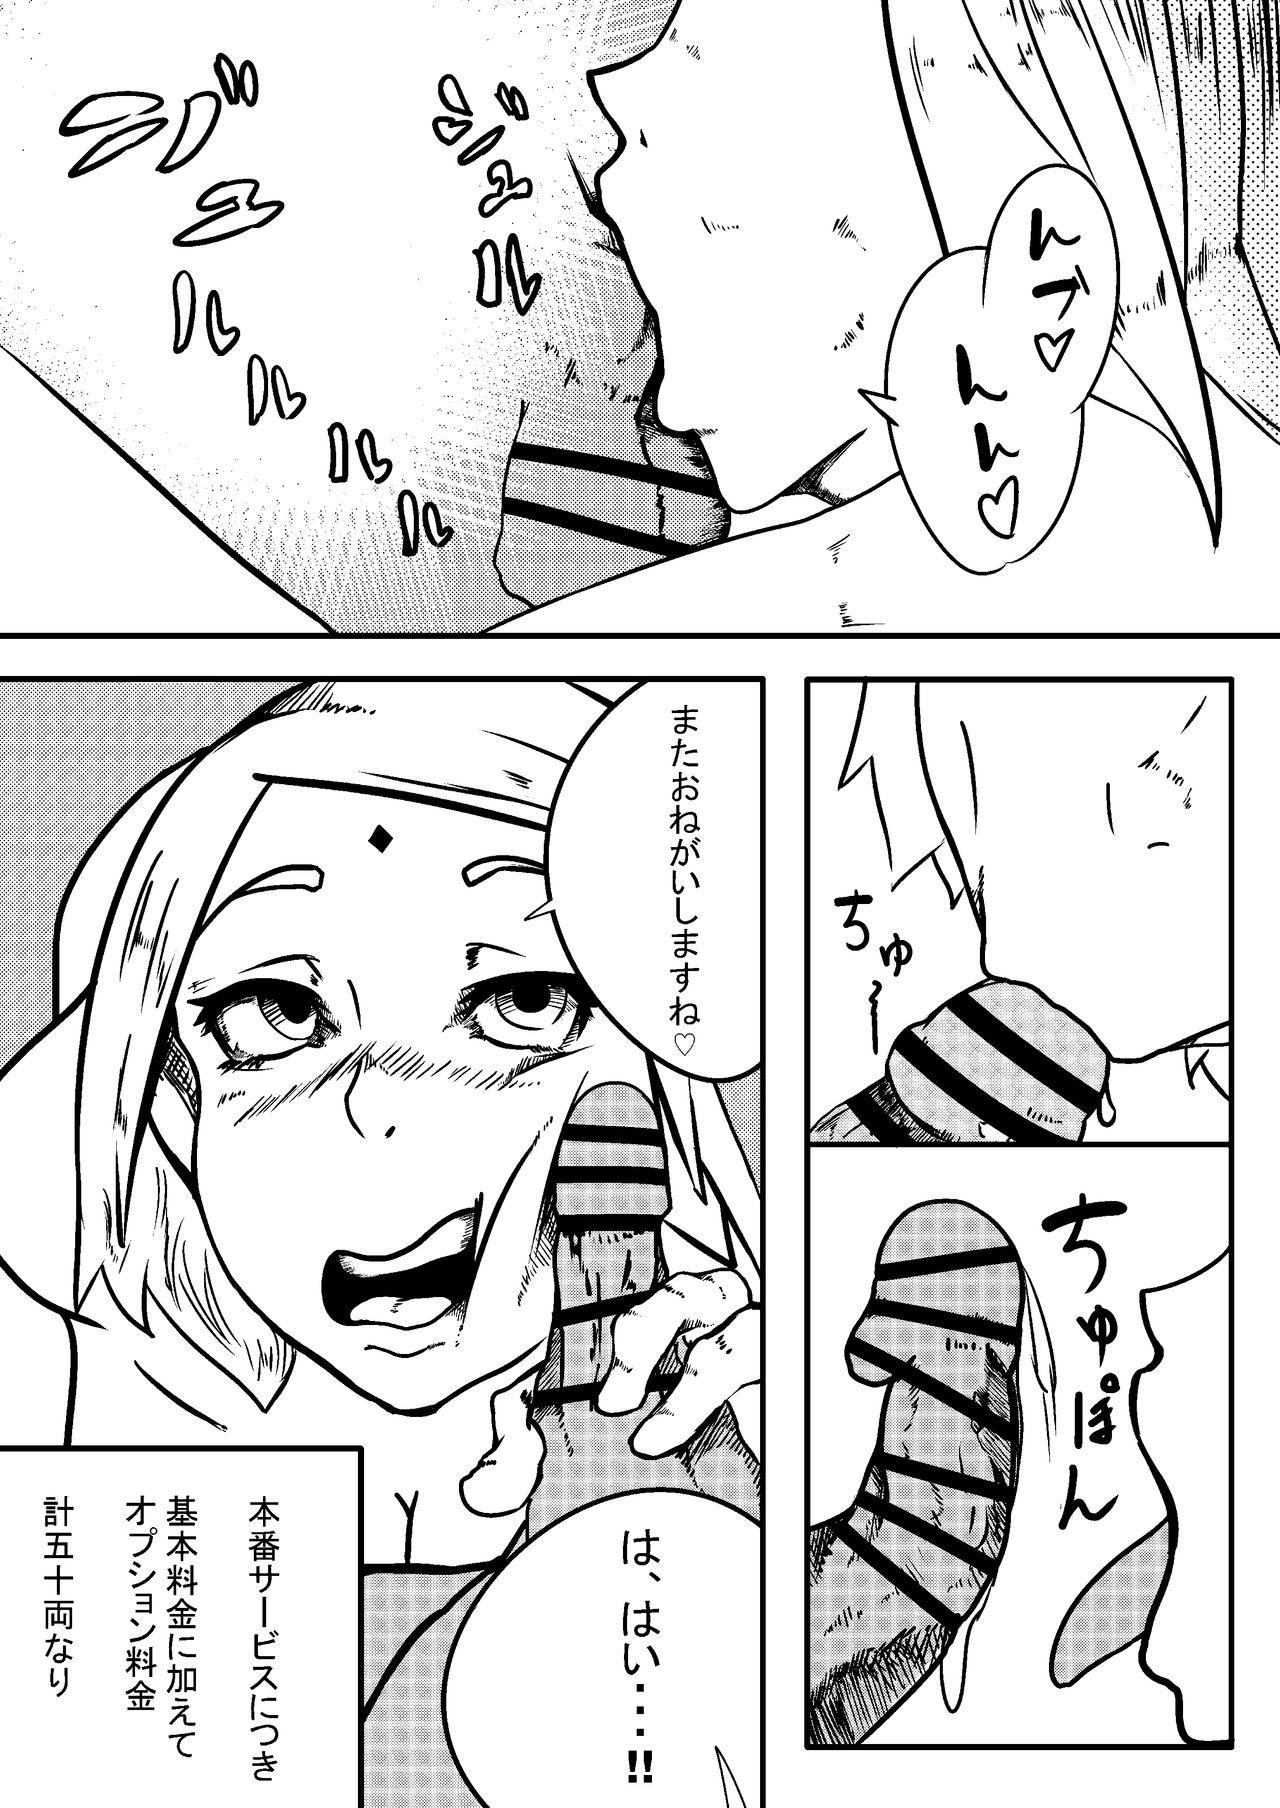 Reverse NARUTOエロ漫画 デリ忍 サクラ - Boruto Mallu - Page 5